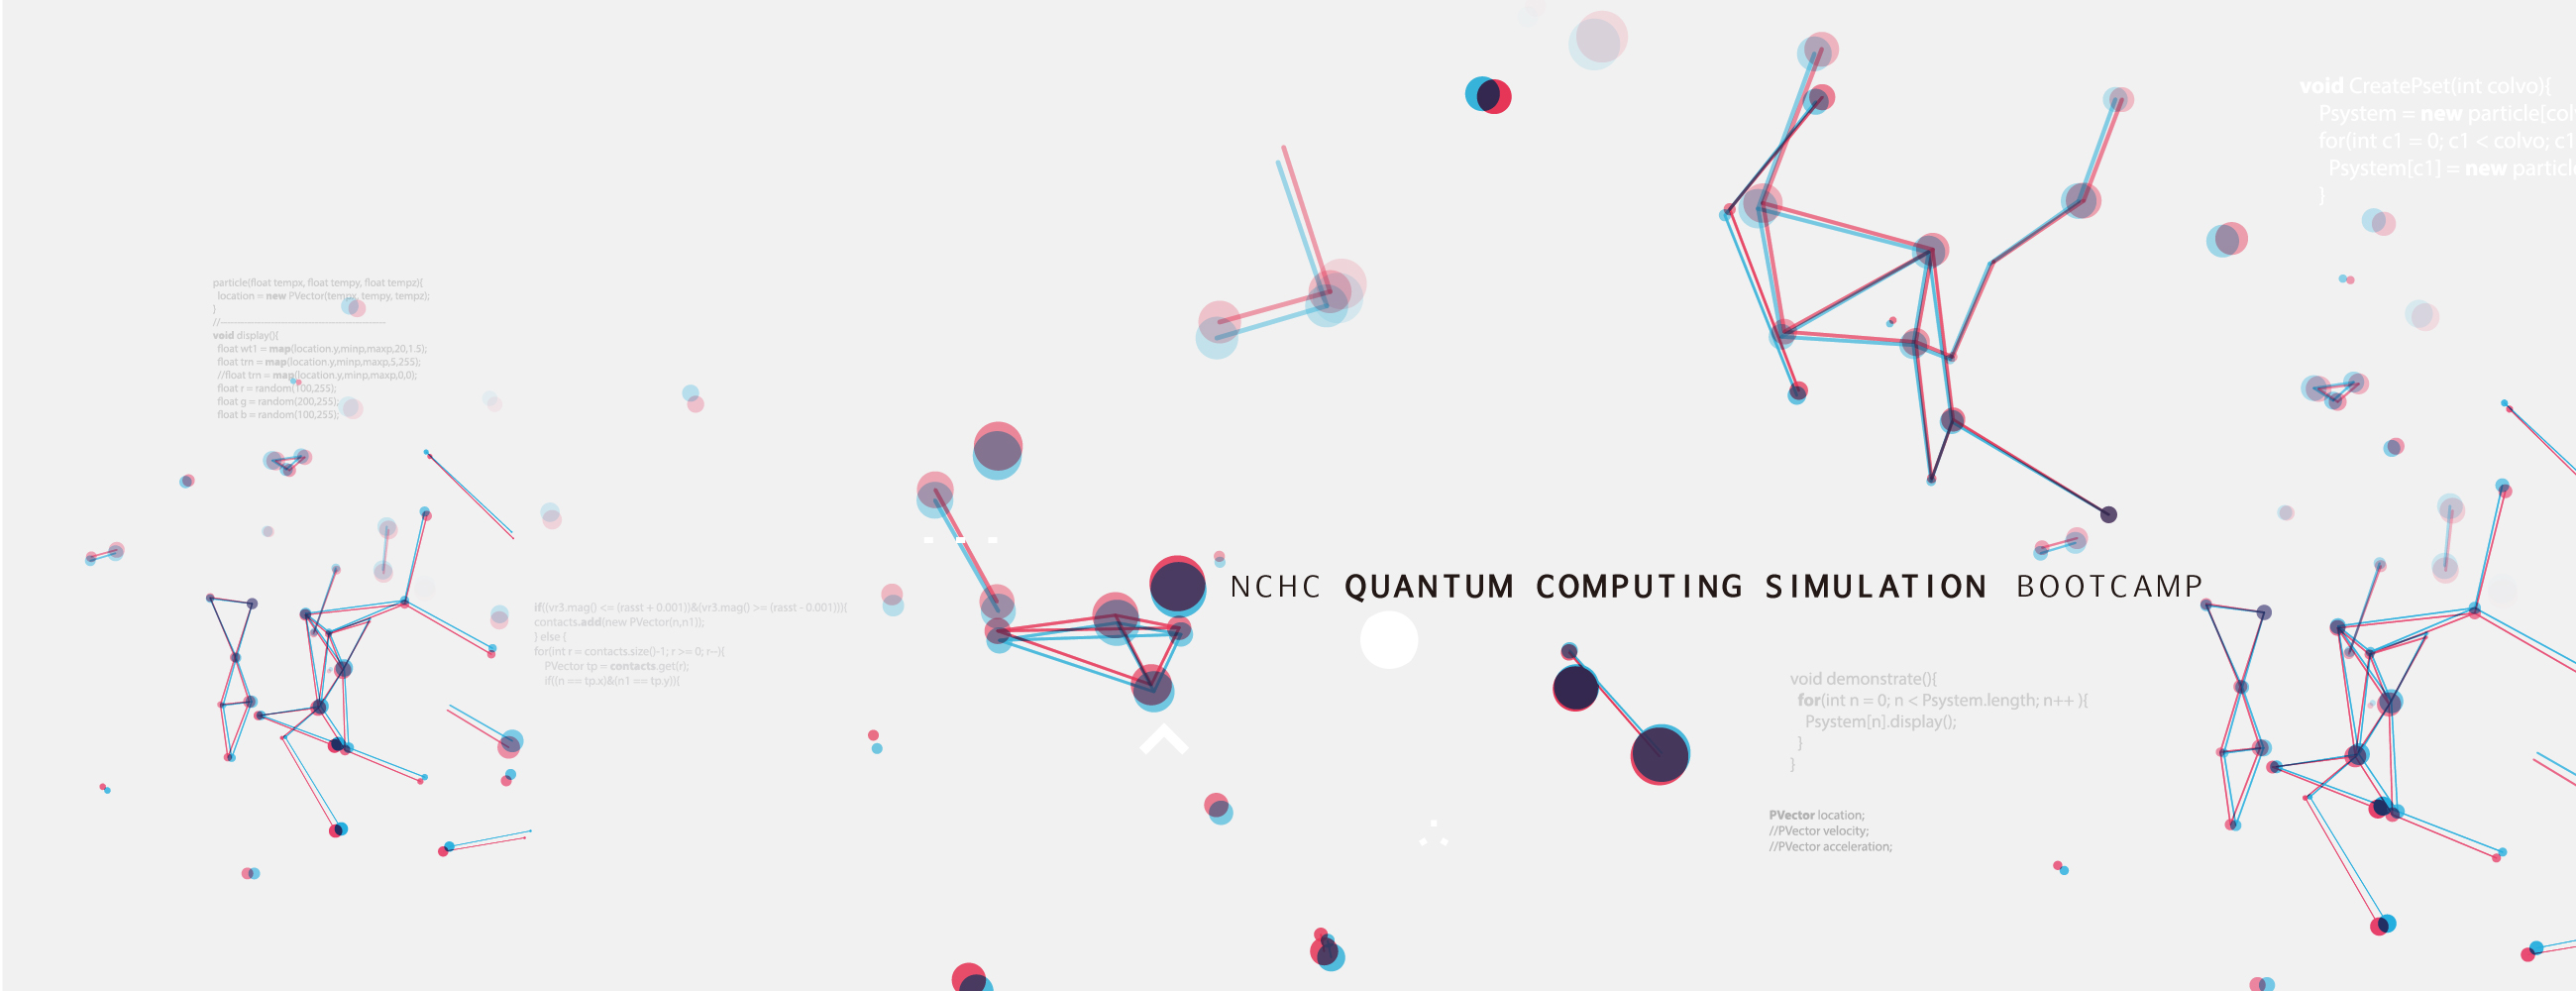 國網中心量子計算模擬實作NCHC Quantum Computing Simulation Bootcamp